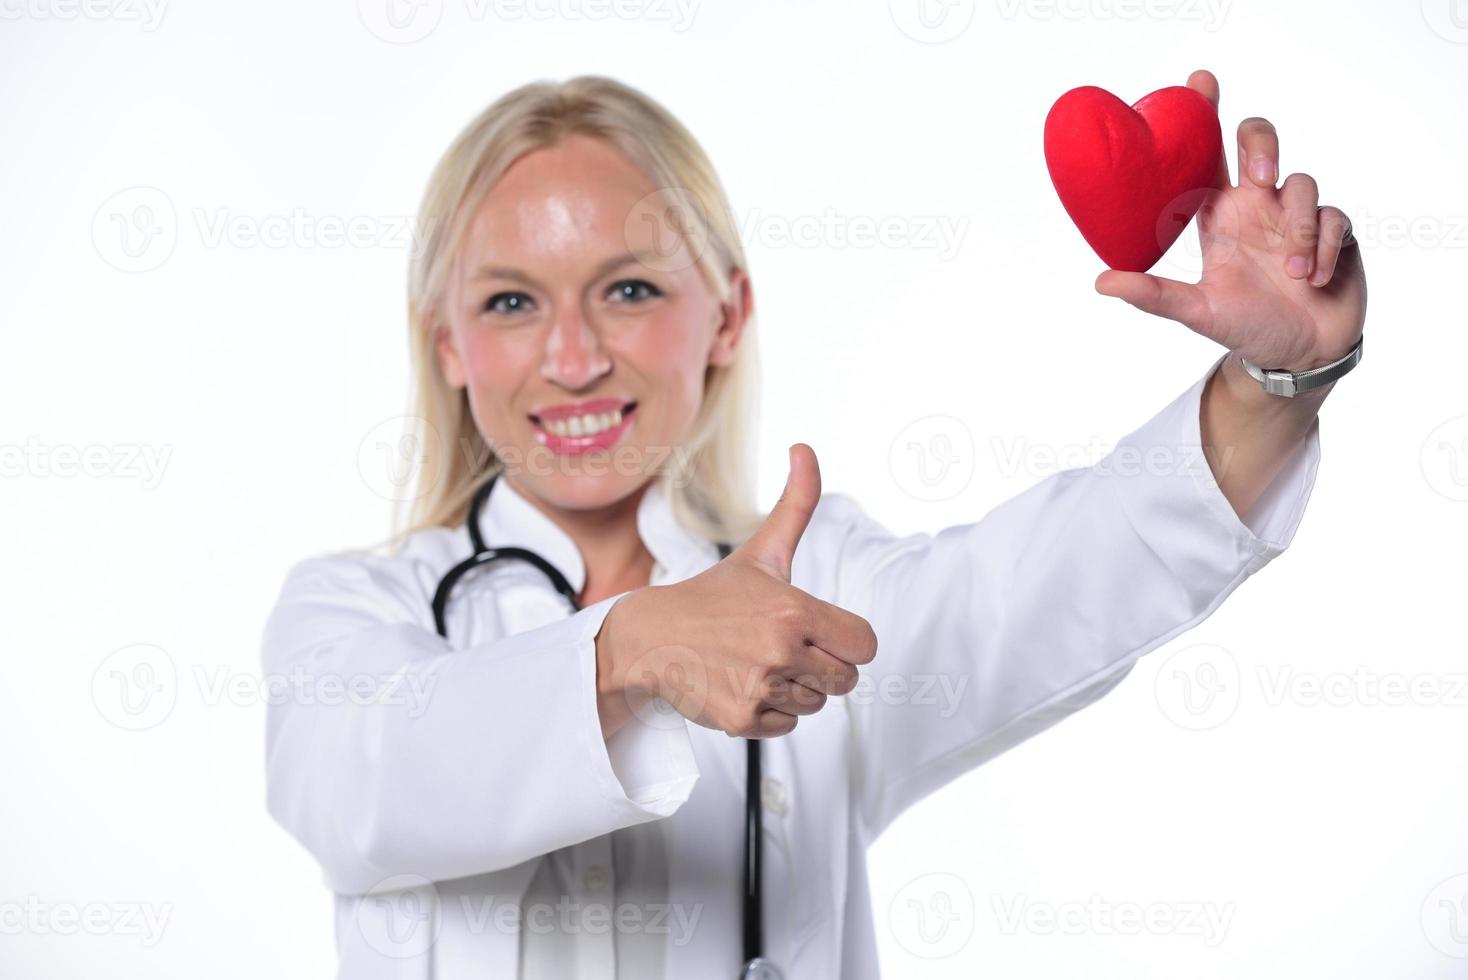 mains de chirurgien cardiaque cardio tenant en forme de coeur rouge sur fond blanc photo